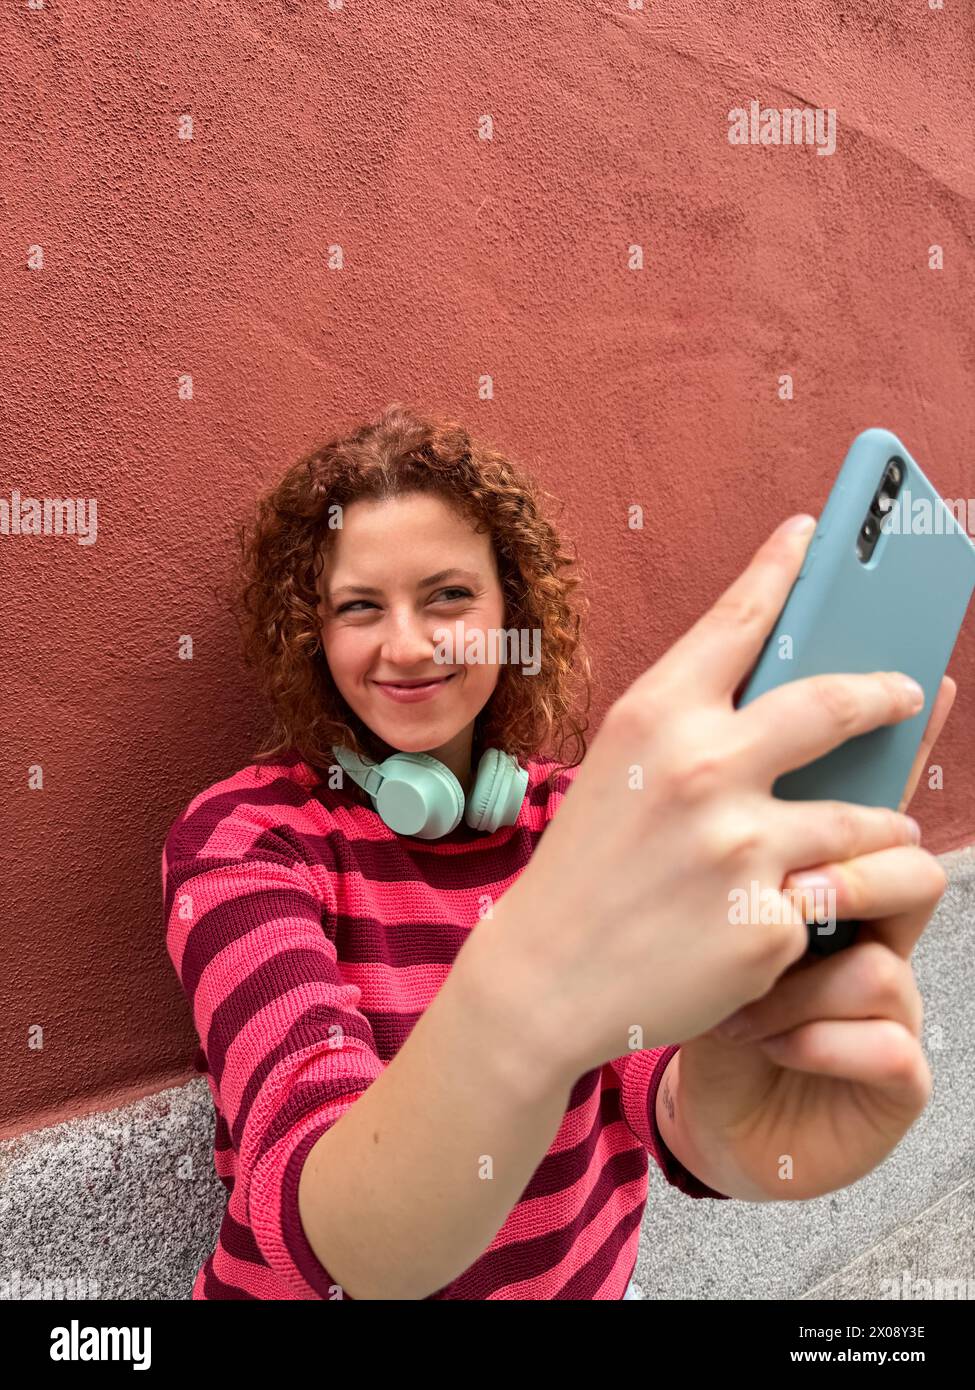 Un'allegra donna rossa dai capelli ricci con una camicia a righe scatta un selfie con il suo smartphone, indossando le cuffie intorno al collo Foto Stock